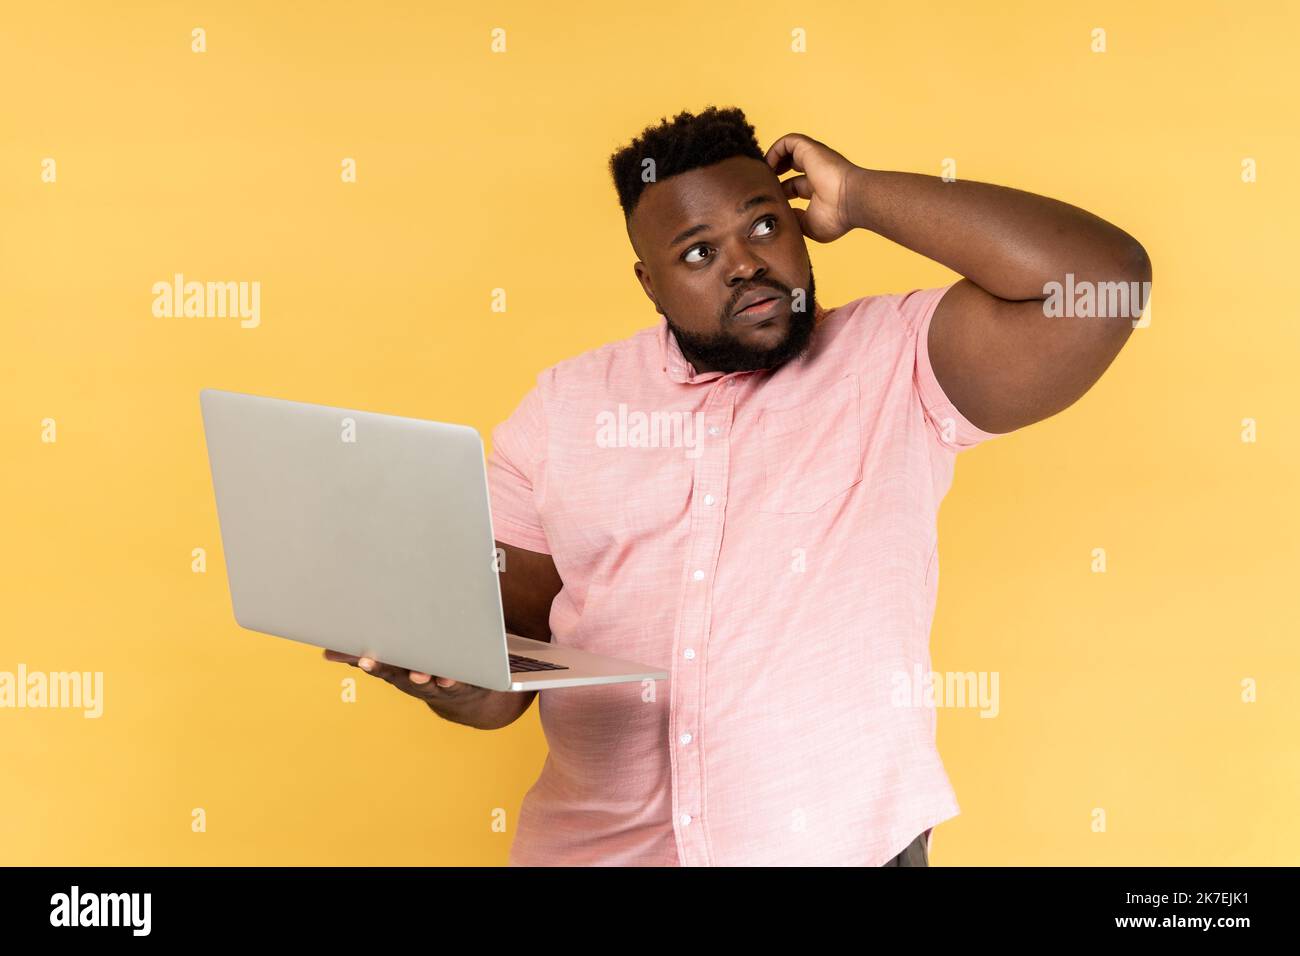 Portrait d'un homme barbu attentif portant une chemise rose tenant un ordinateur portable et pensant à la stratégie de démarrage avec une expression douteuse sérieuse. Studio d'intérieur isolé sur fond jaune. Banque D'Images